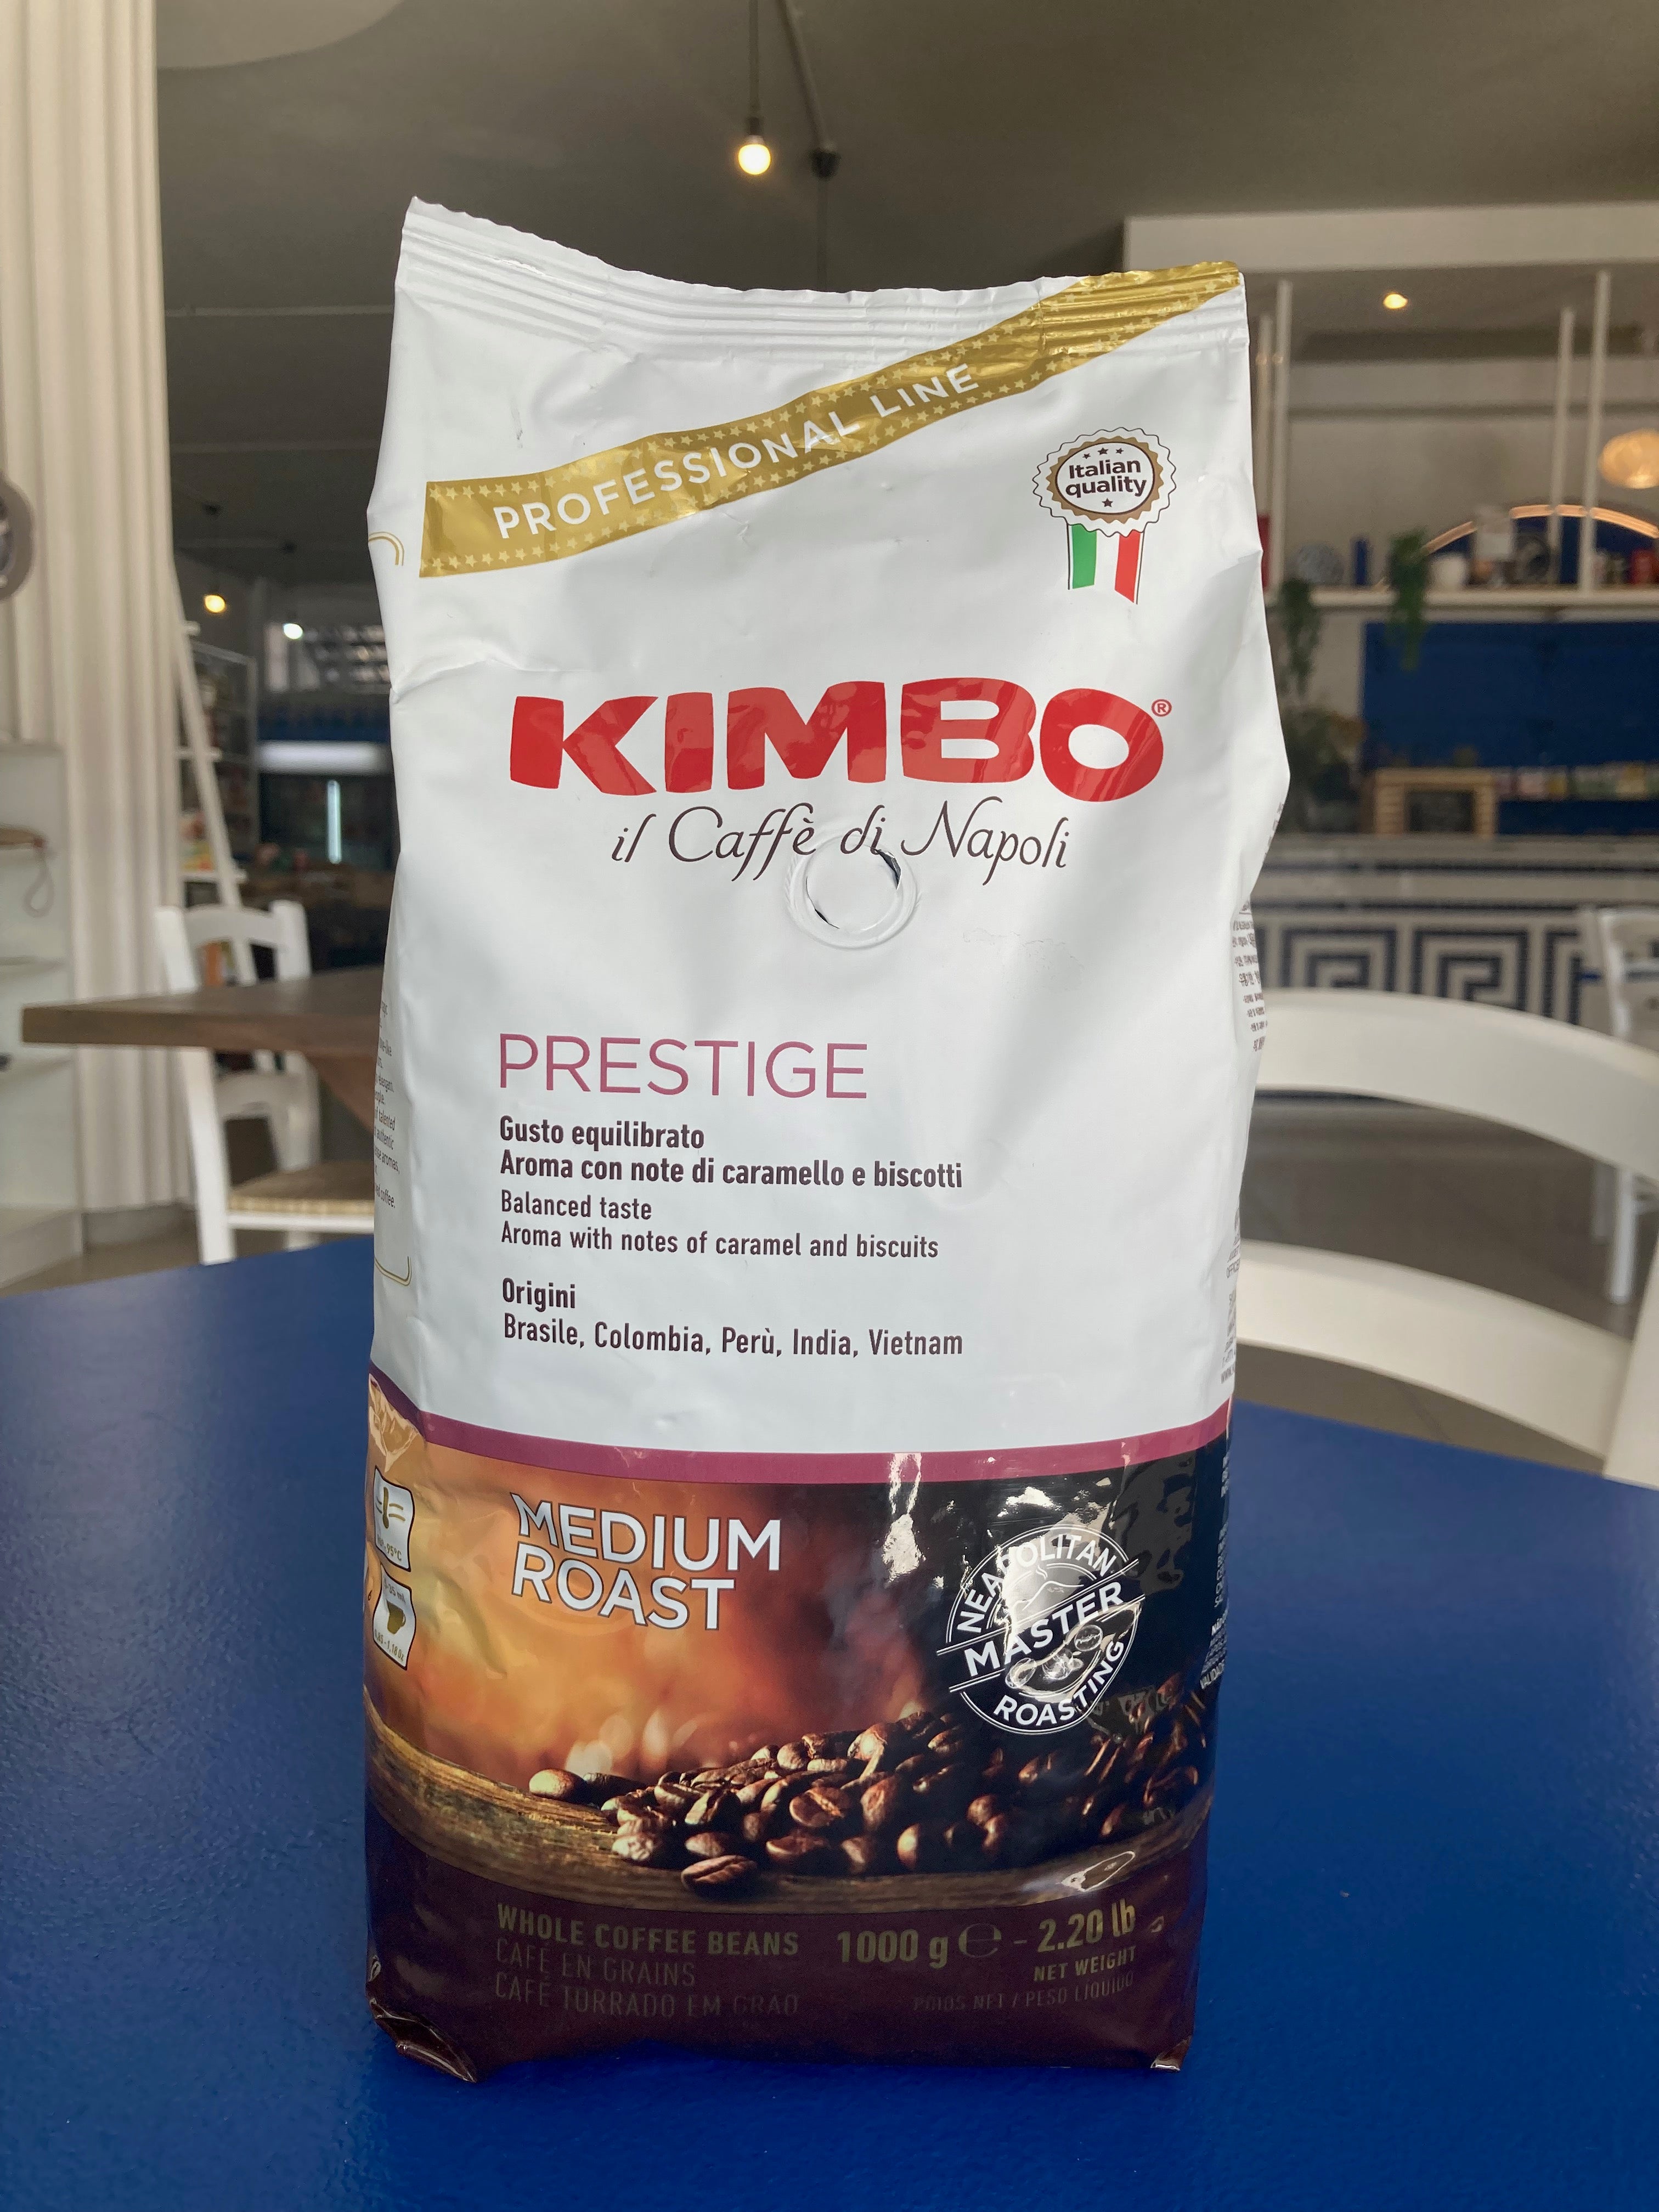 Kimbo Espresso Napoli Café en grains 1 kg